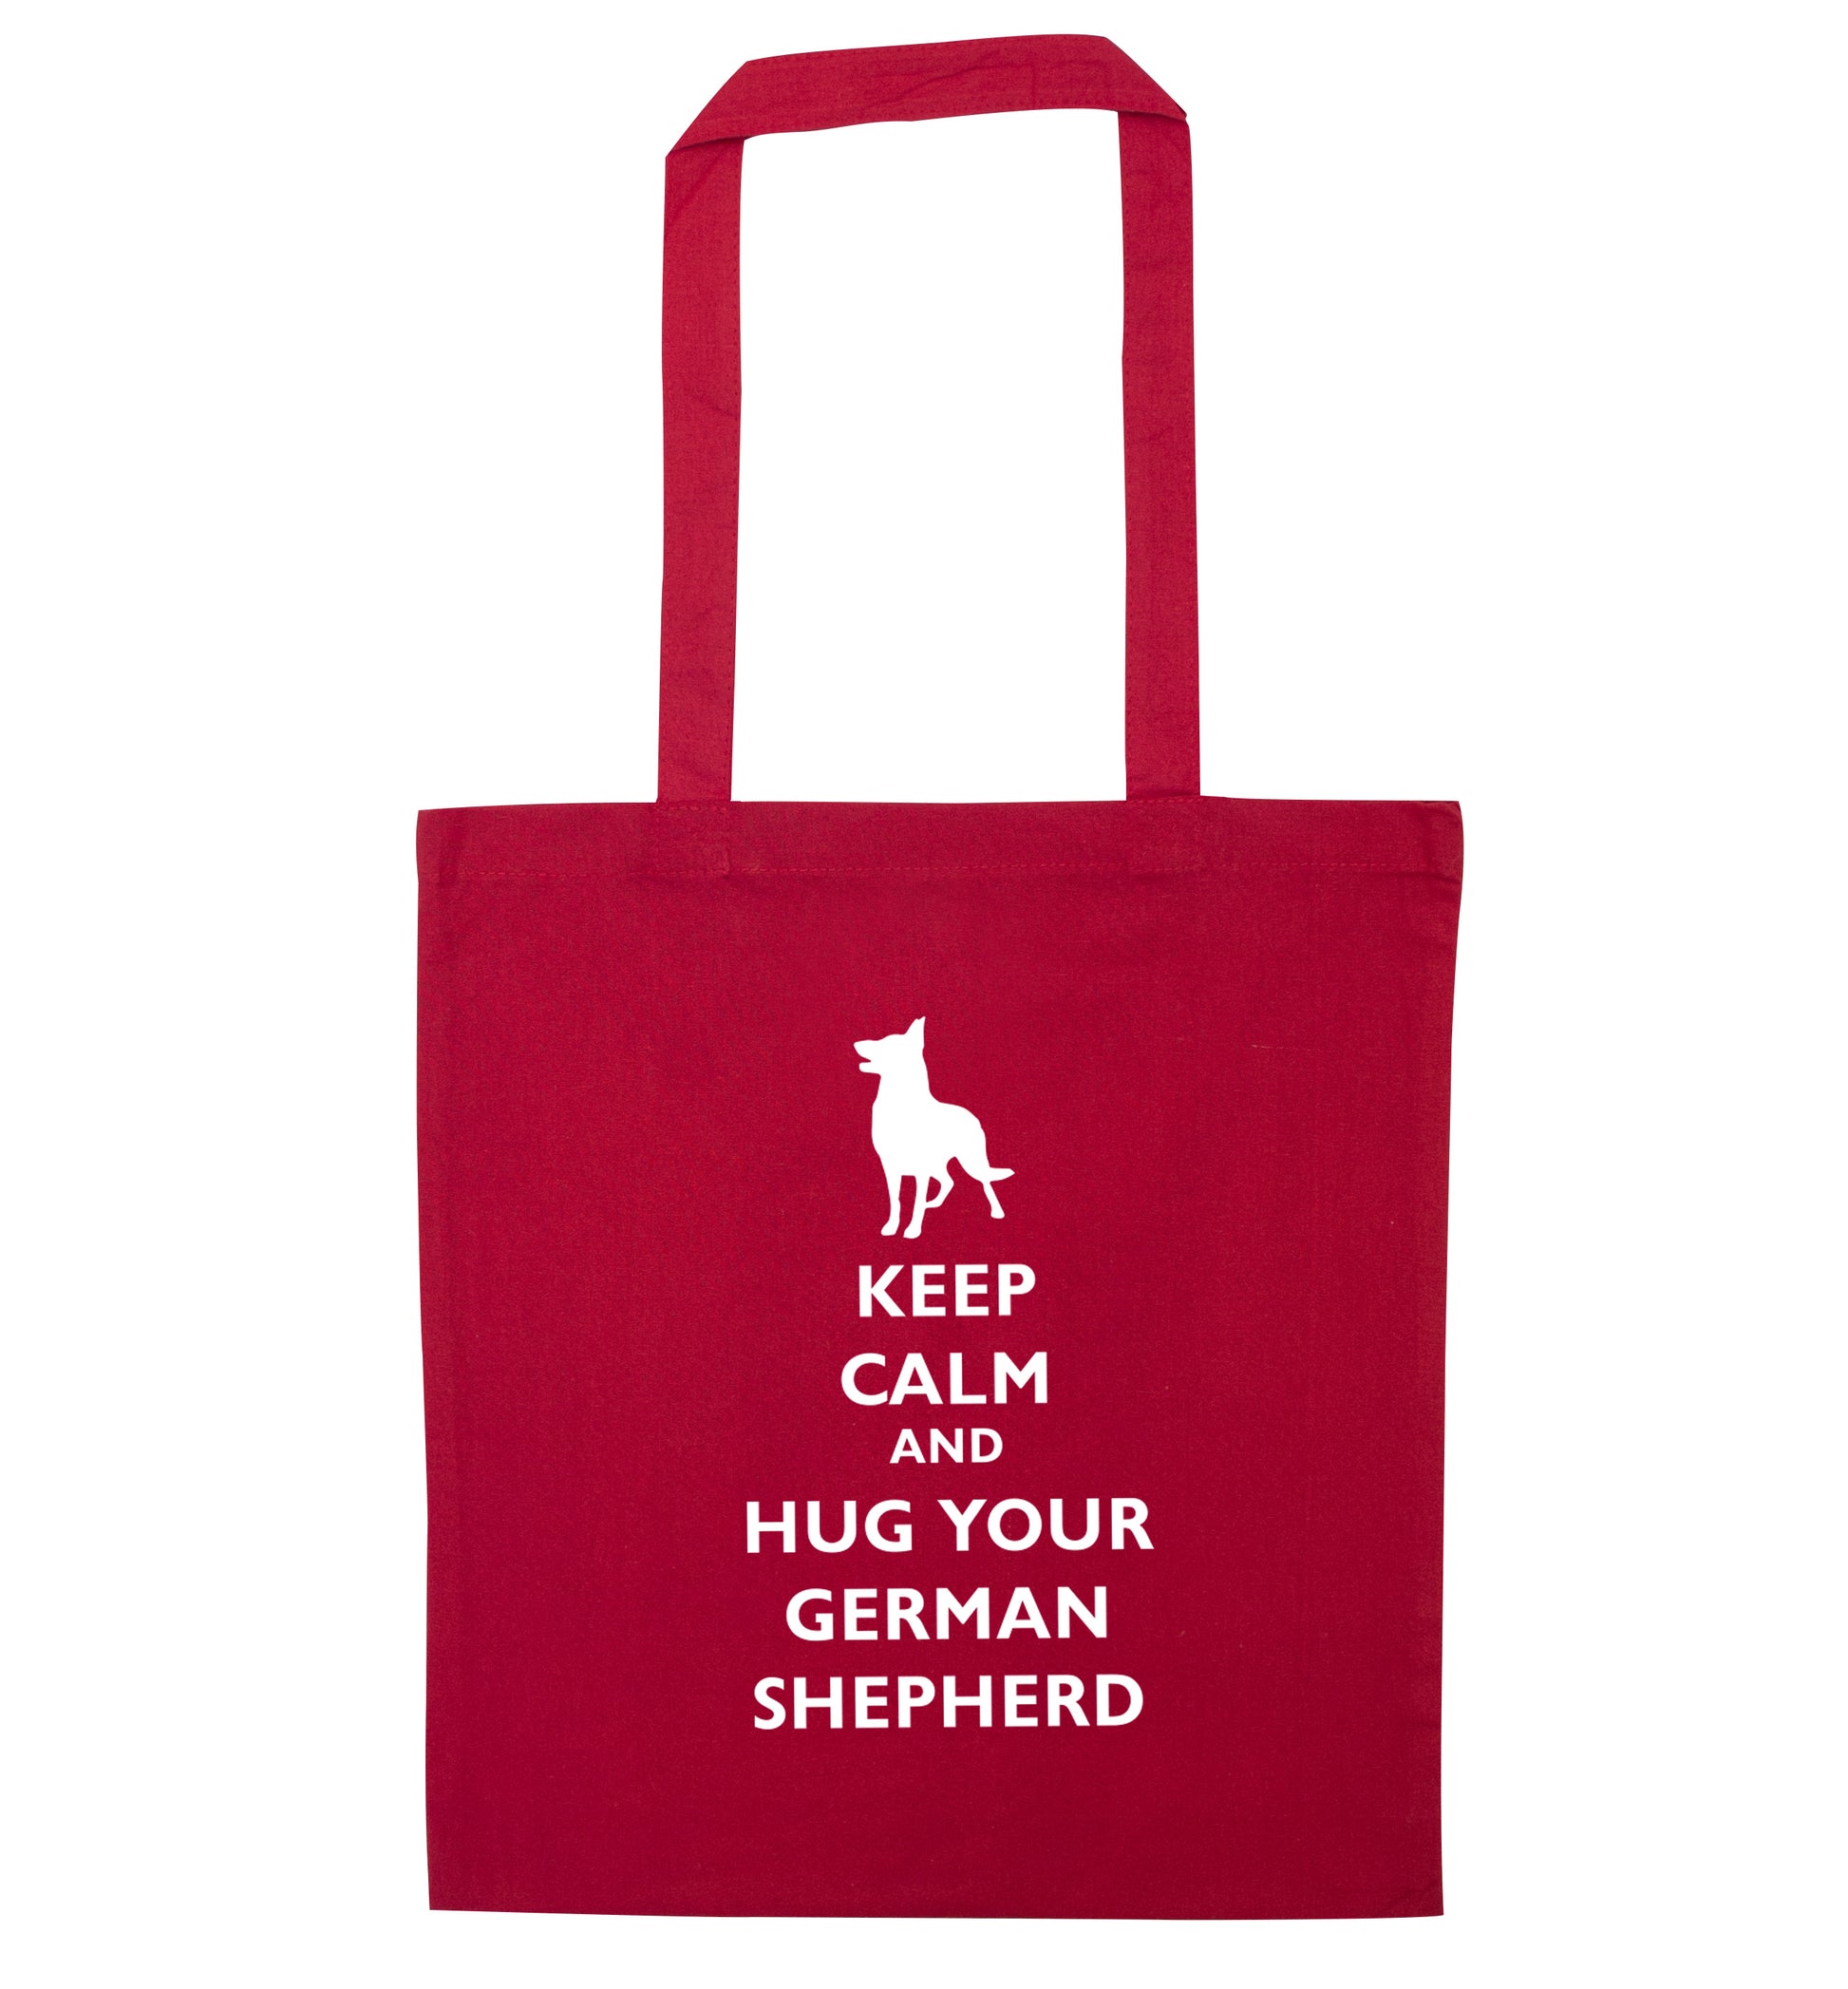 Keep calm and hug your german shepherd red tote bag